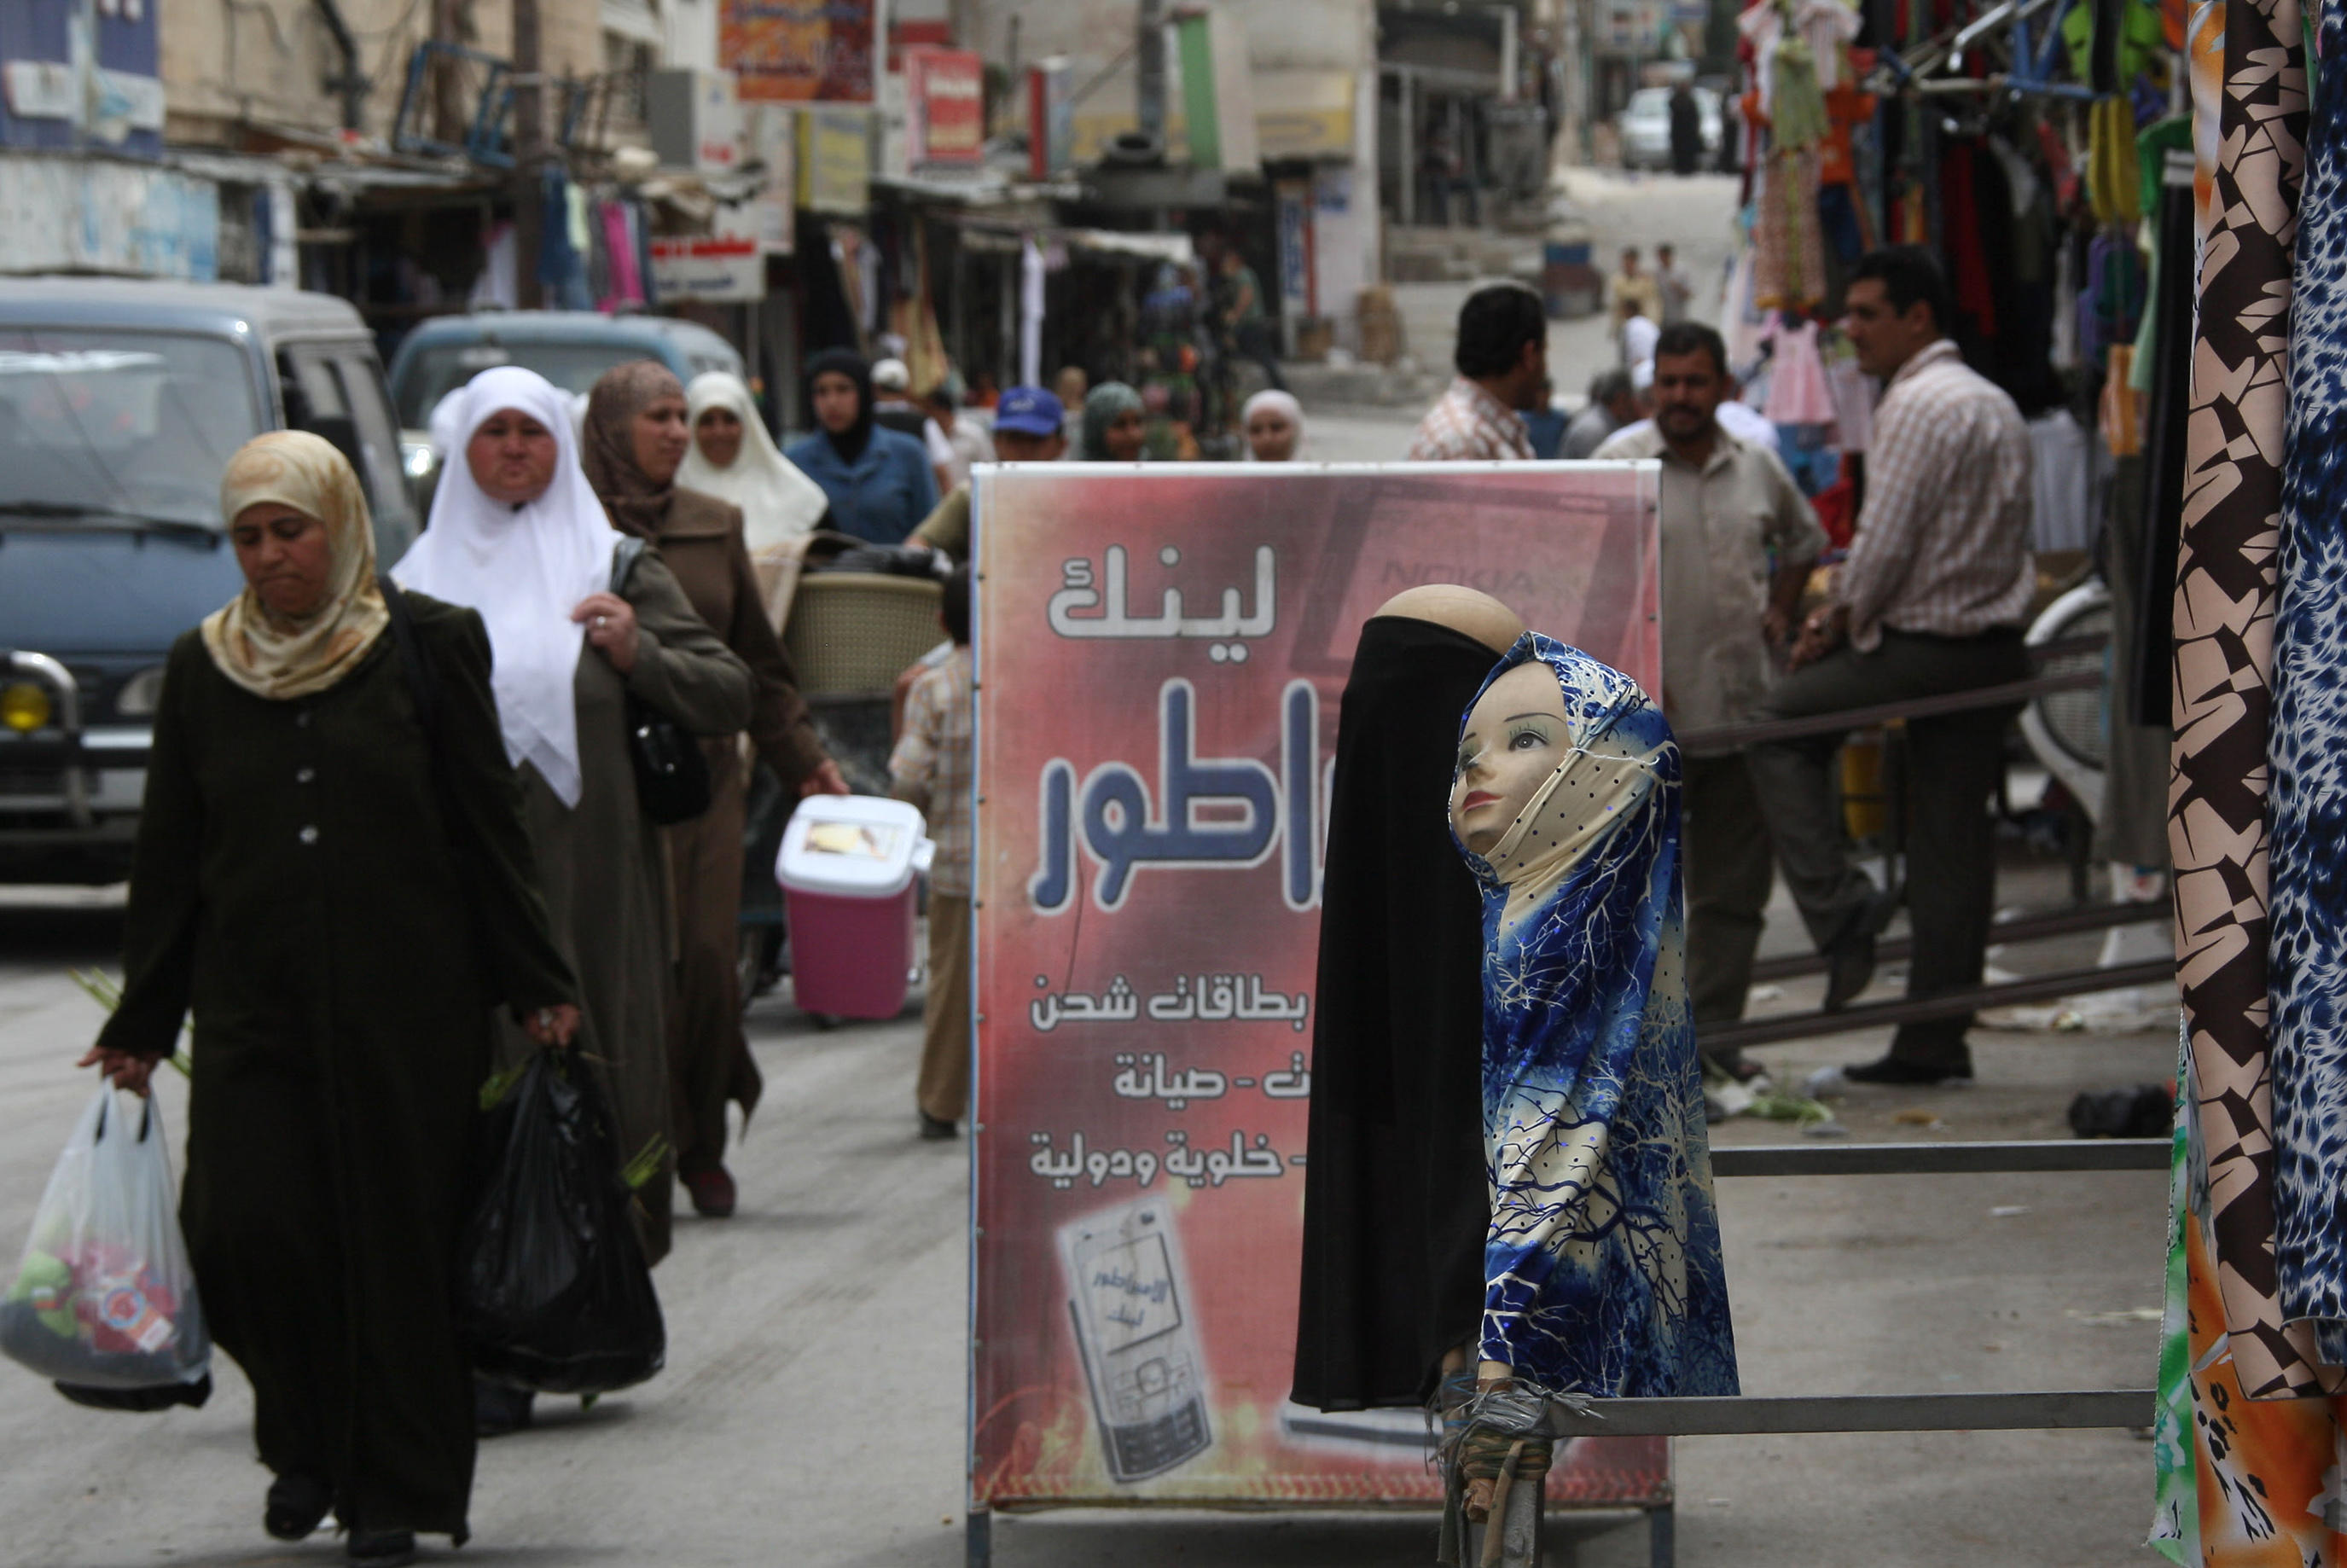 إحدى شوارع عمان التي تشهد حركة تجارية نشطة من المستهلكين. أ ف ب 